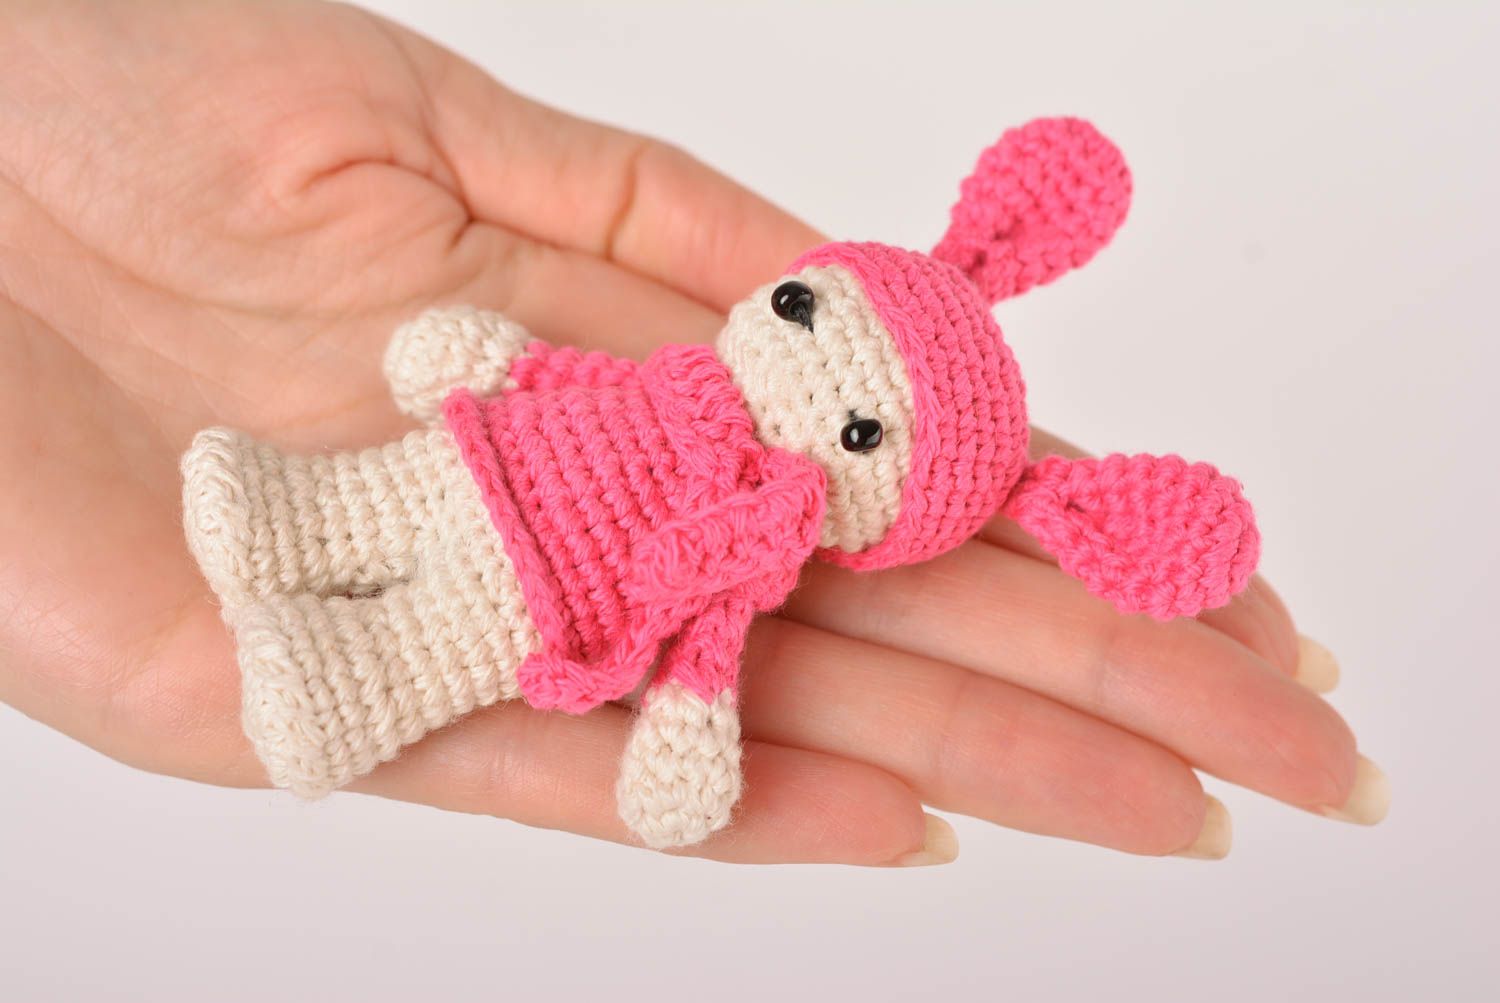 Мягкая игрушка ручной работы игрушка крючком детская игрушка розово-белая фото 3